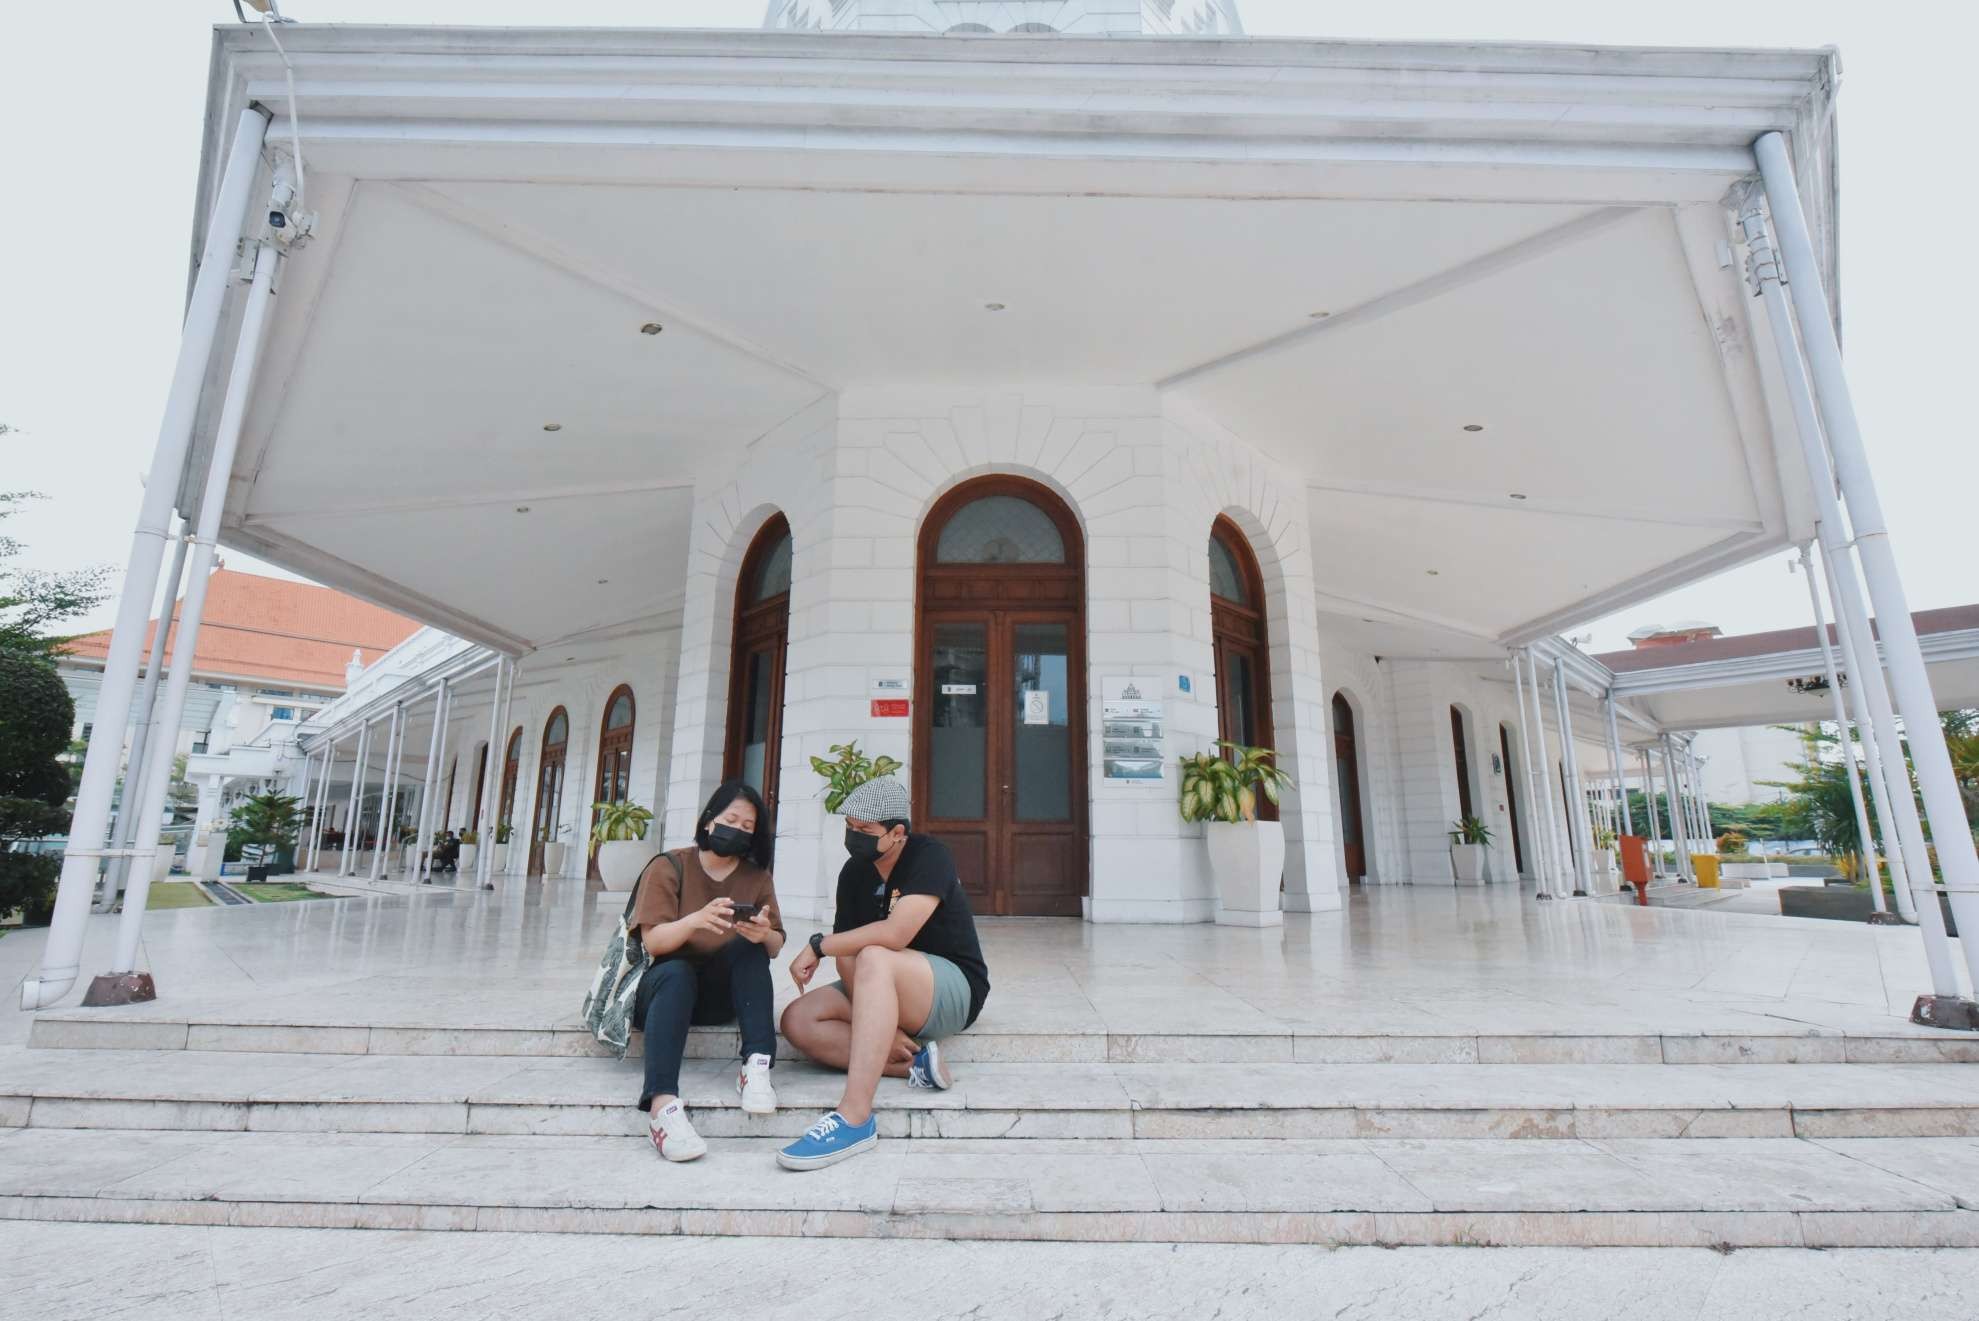 Wisata Alun-Alun Surabaya yang mulai dibuka kembali untuk umum mulai hari ini. (Foto: Istimewa)